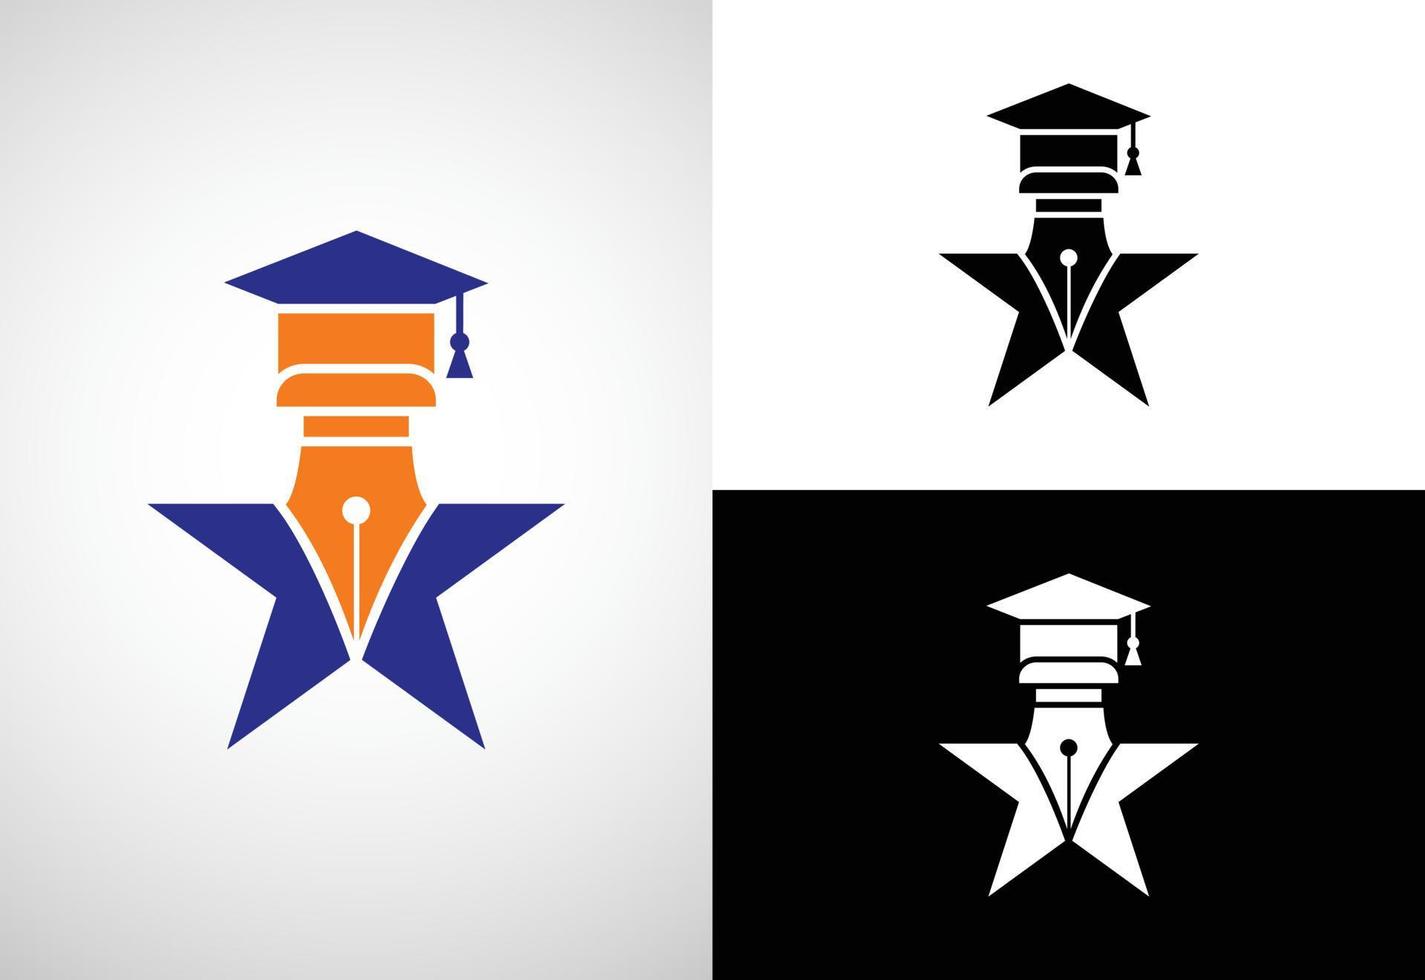 formazione scolastica logo design vettore modello, formazione scolastica e la laurea logo vettore illustrazione